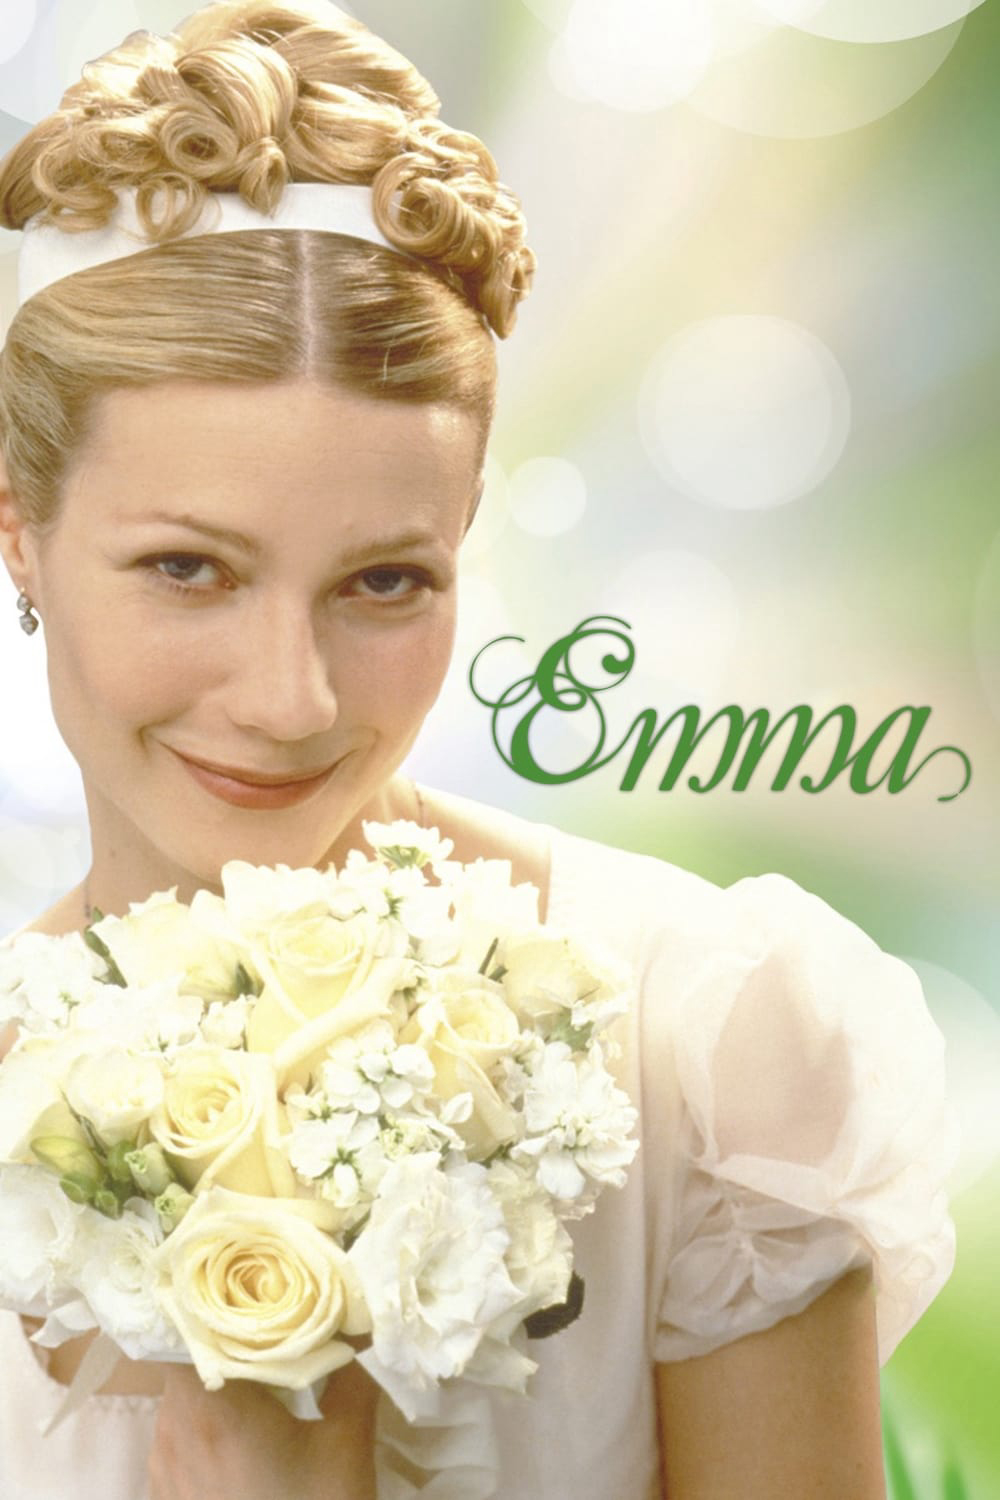 Poster Phim Emma (Emma)